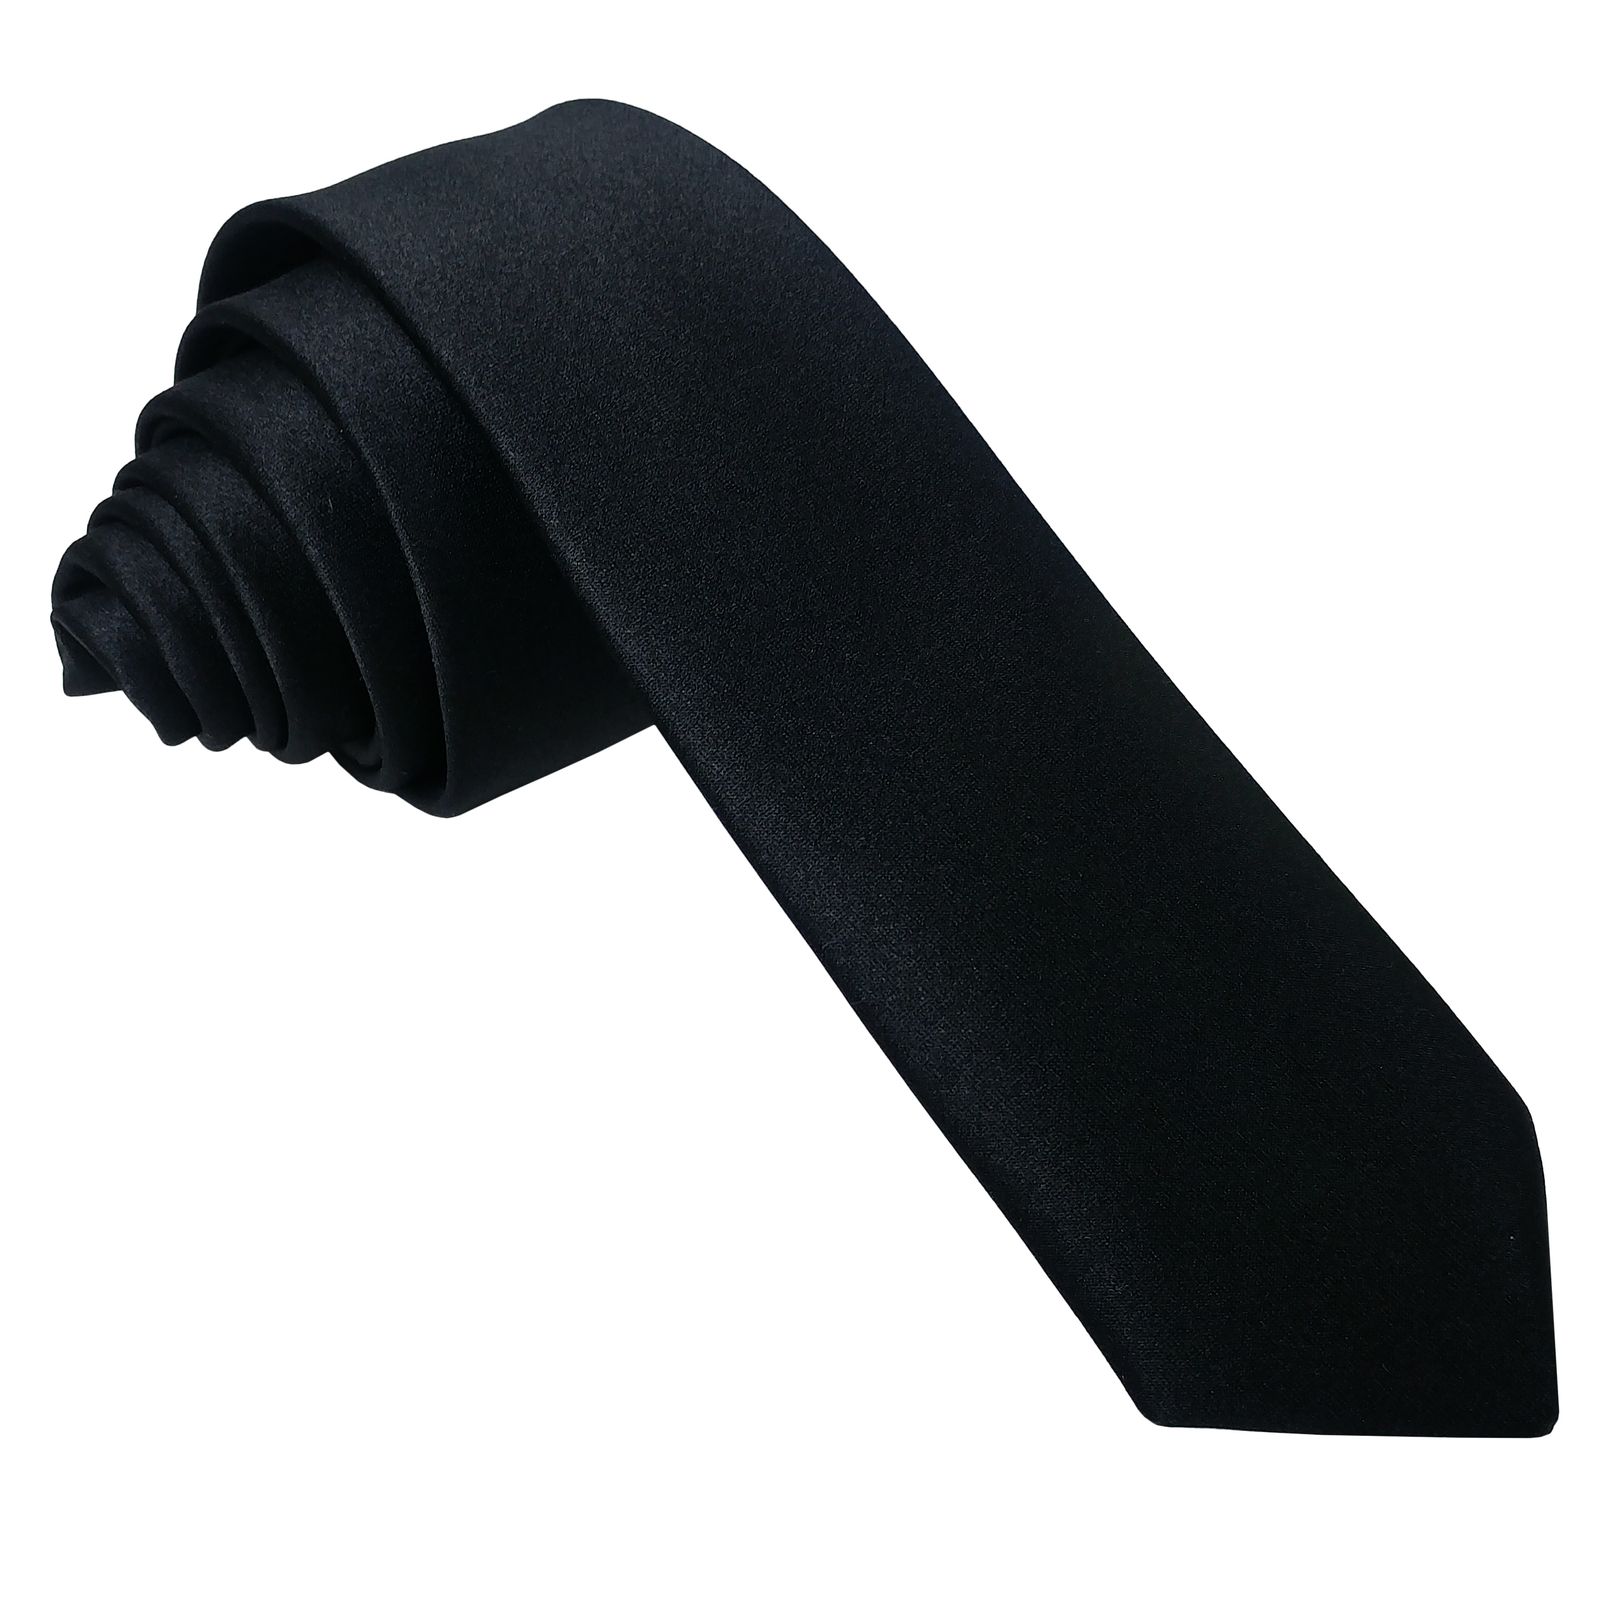  ست کراوات و پاپیون و دستمال جیب مردانه کد B3 -  - 9